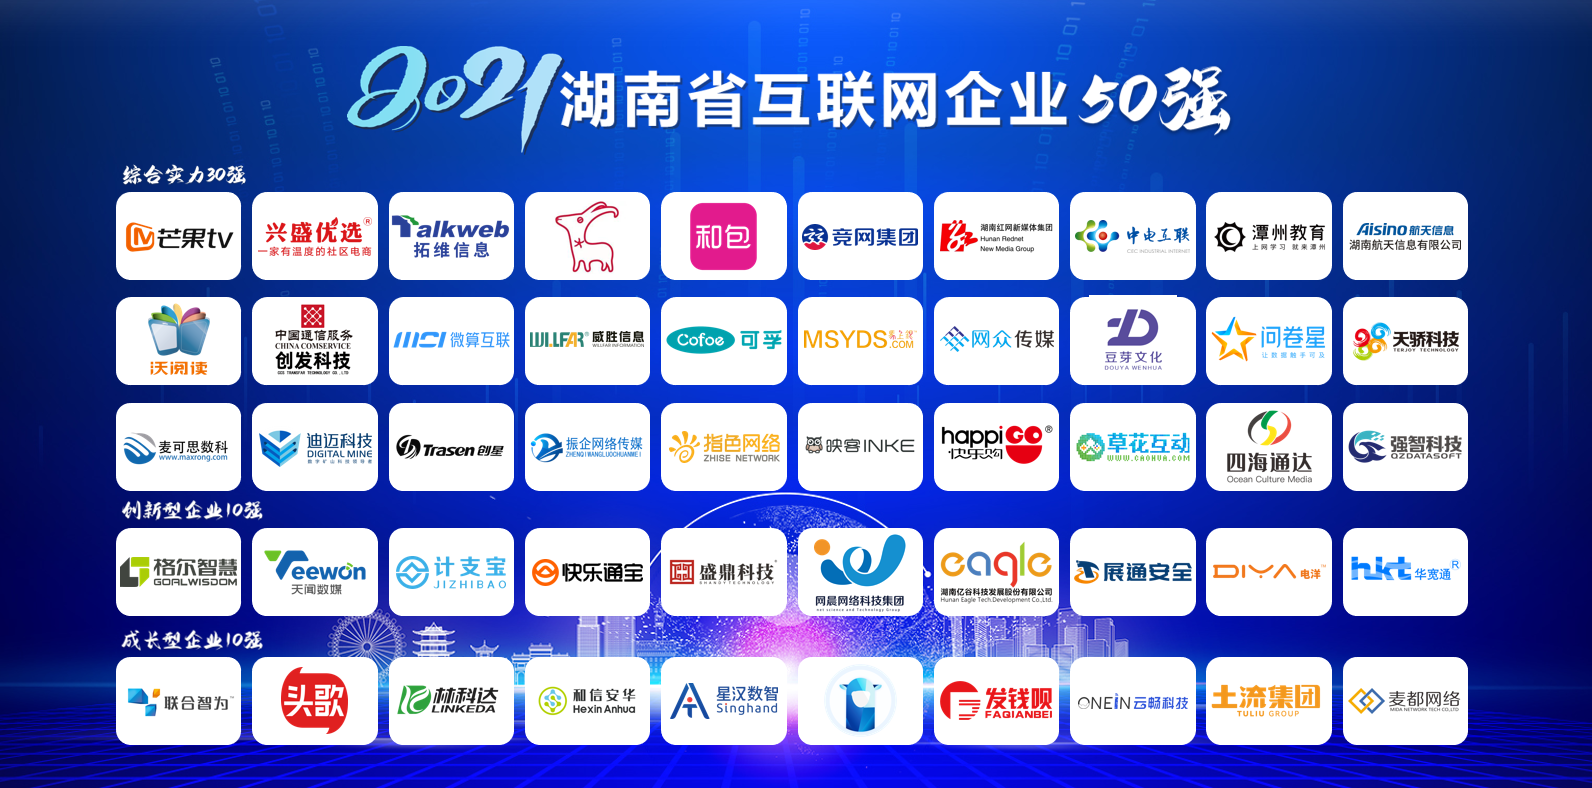 2021年湖南省互联网企业50强名单揭晓